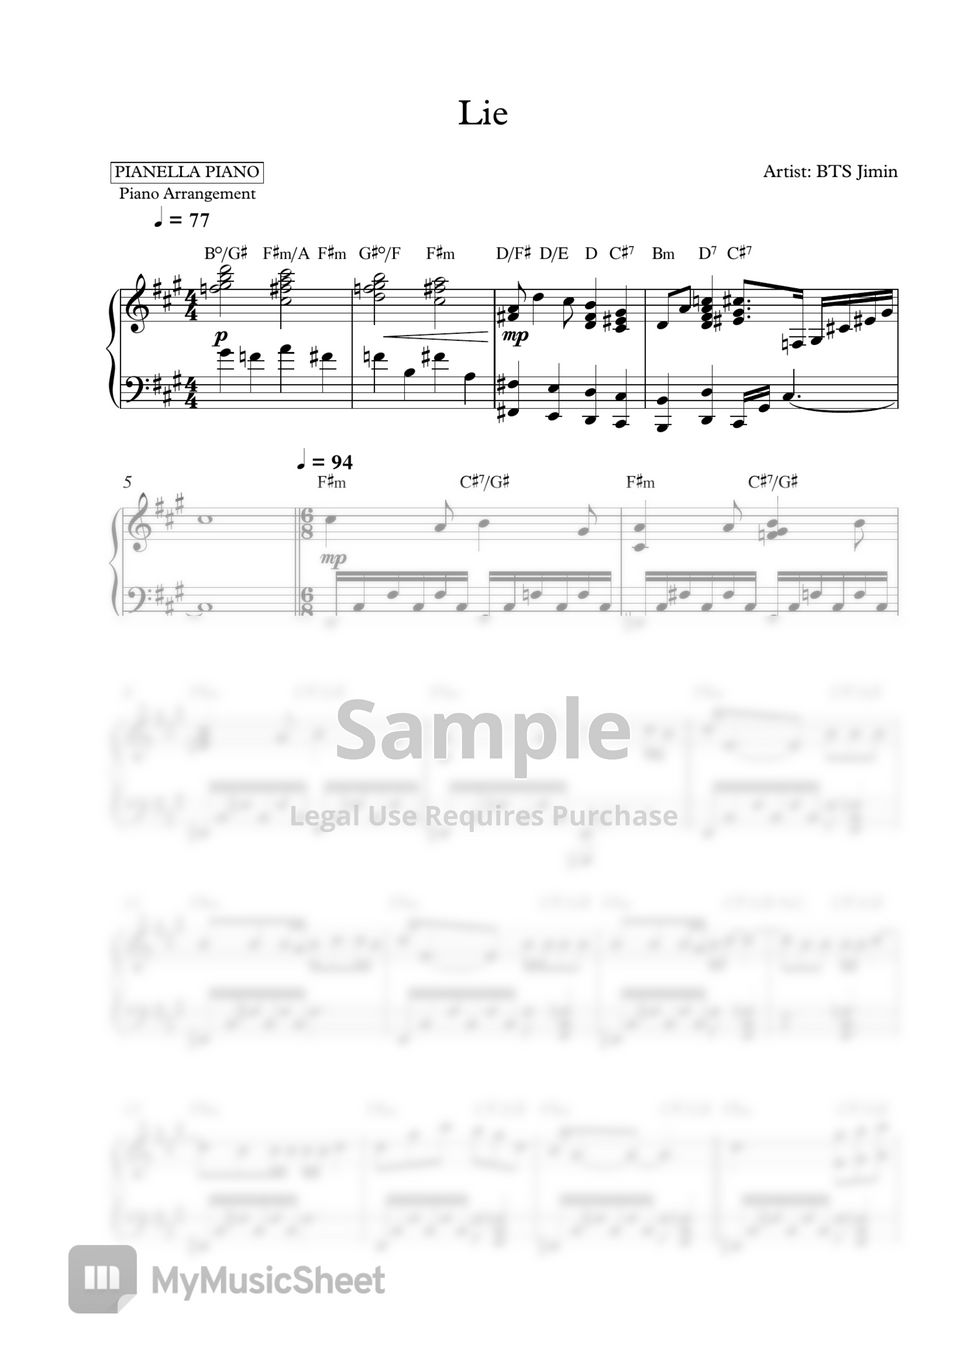 BTS Jimin - Lie (Piano Sheet) by Pianella Piano